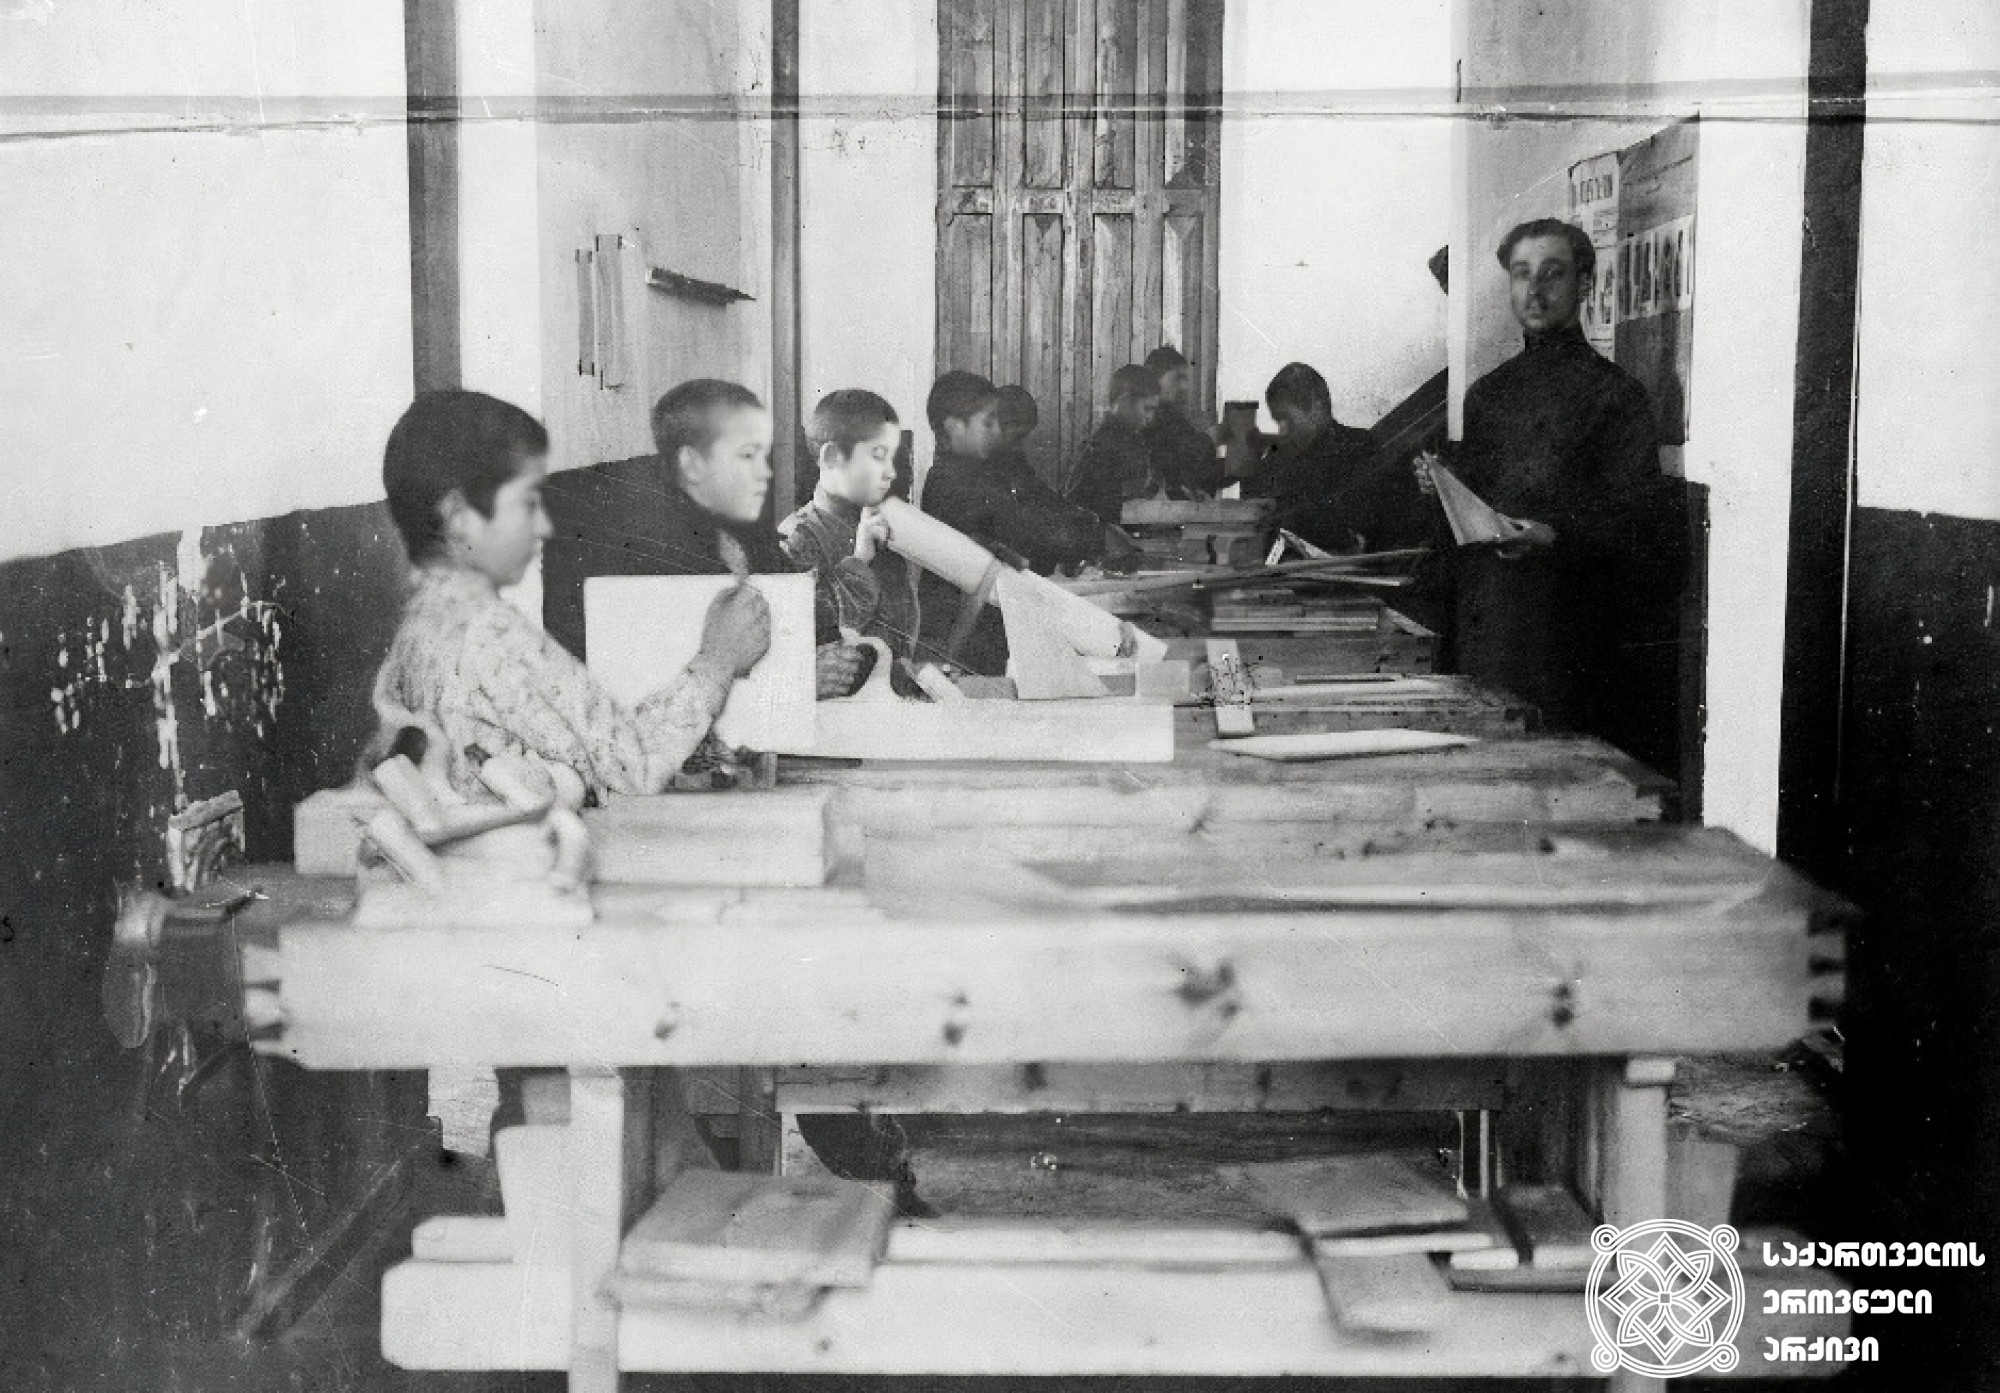 სოხუმის  ოლქის  სახალხო სასწავლებლის  ინსპექციის  აბრუბჟის ორკლასიანი  სკოლის  მოსწავლეები სადურგლო-სახელოსნო  ოთახში  <br>
(1910-1917) <br>
Pupils of the Sokhumi District Public School Inspectorate of the two-grade school Abrubzh in the carpentry-workshop room <br>
(1910-1917)